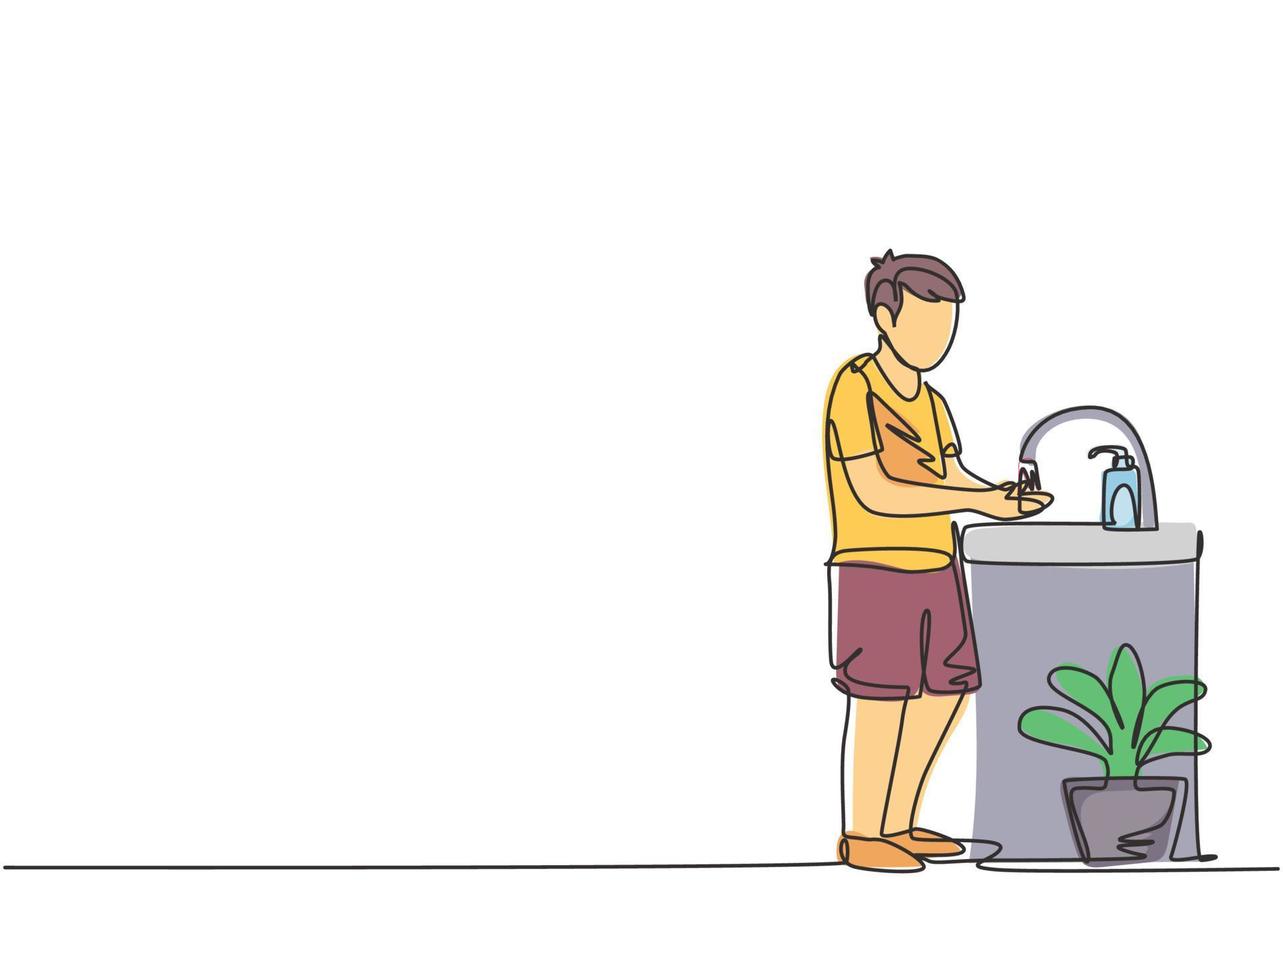 dessin continu d'une ligne un garçon se lave les mains dans l'évier, il y a un distributeur de savon près du robinet et il y a un pot de plantes sous l'évier. illustration graphique de vecteur de conception de dessin à une seule ligne